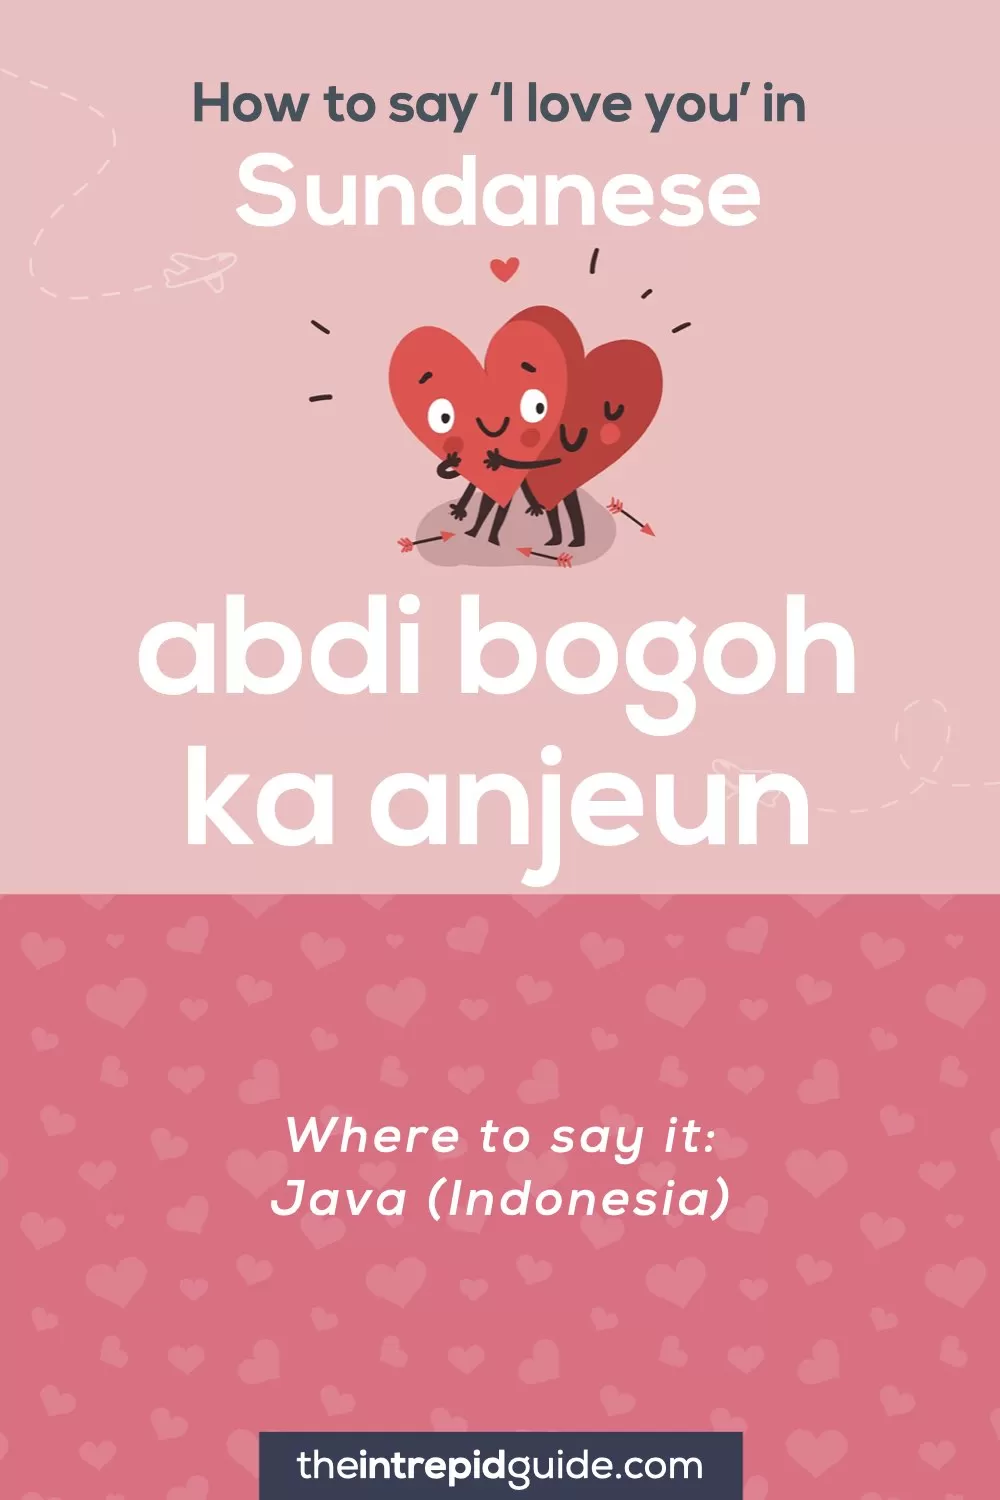 How to say I love you in different languages - Sundanese - abdi bogoh ka anjeun